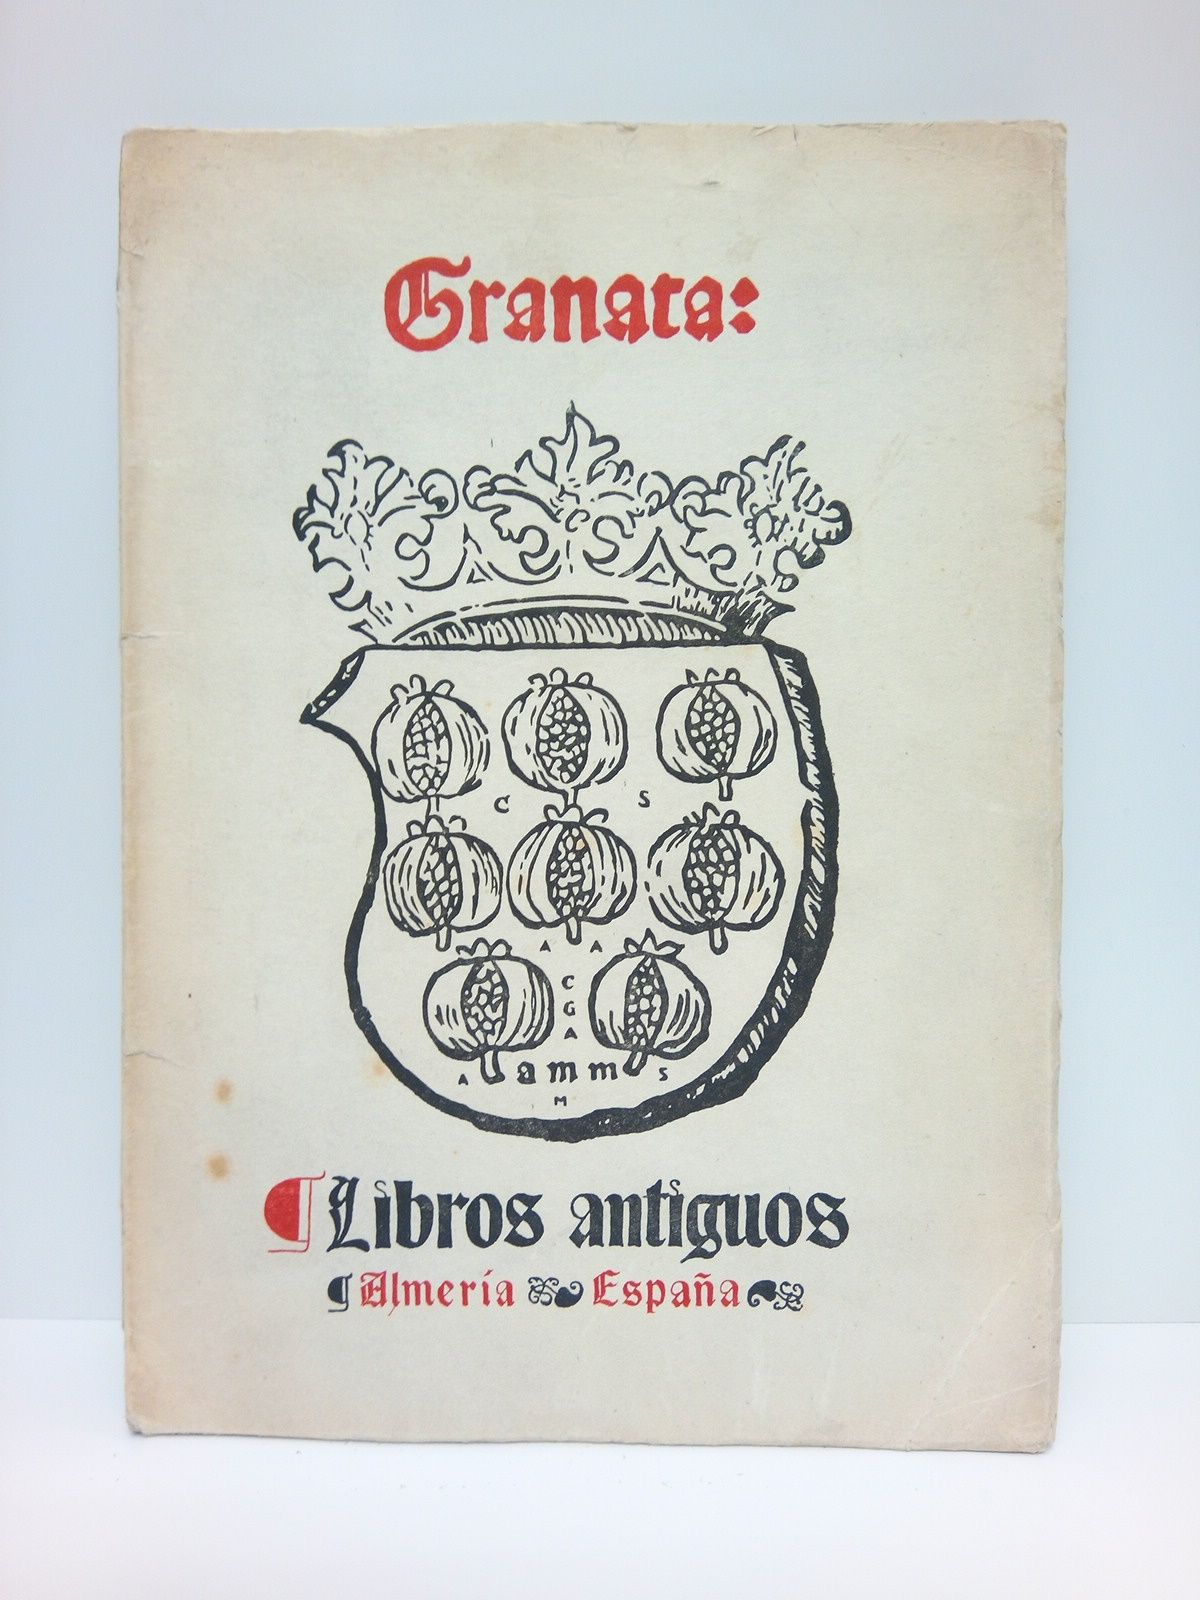 GRANATA. Libros Antiguos - Catlogo N 3. [de esta librera, conteniendo un total de 313 selectos libros de los siglos XVI, XVII y XVIII]